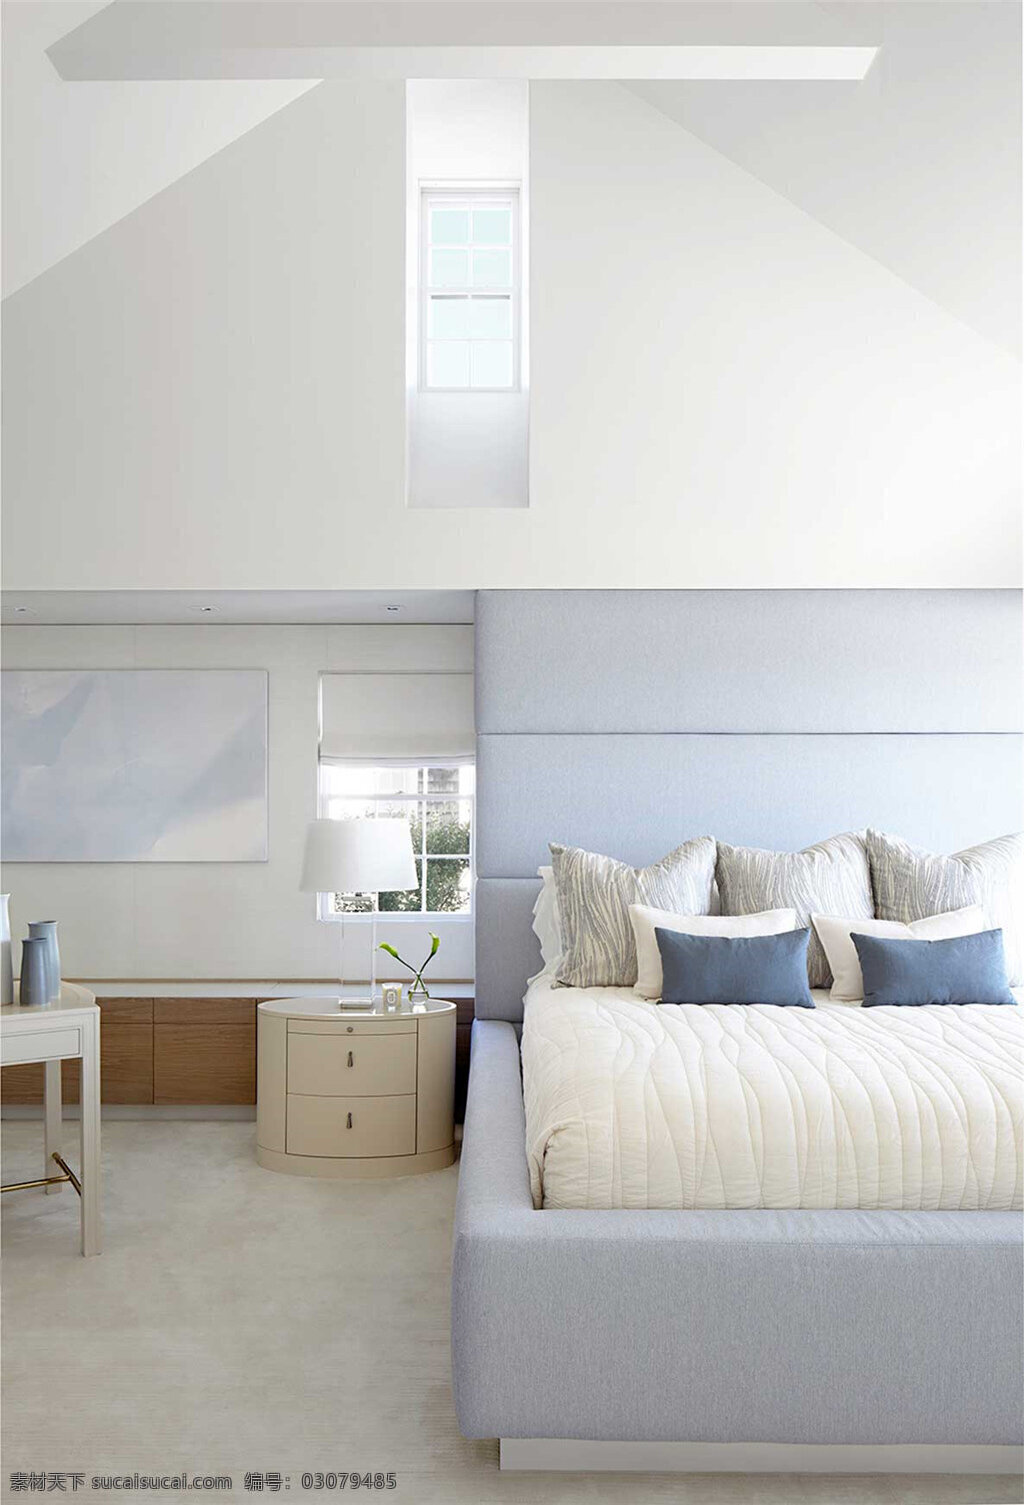 简约 卧室 床头柜 装修 效果图 白色地板砖 白色墙壁 白色台灯 双人床铺 卧室装修